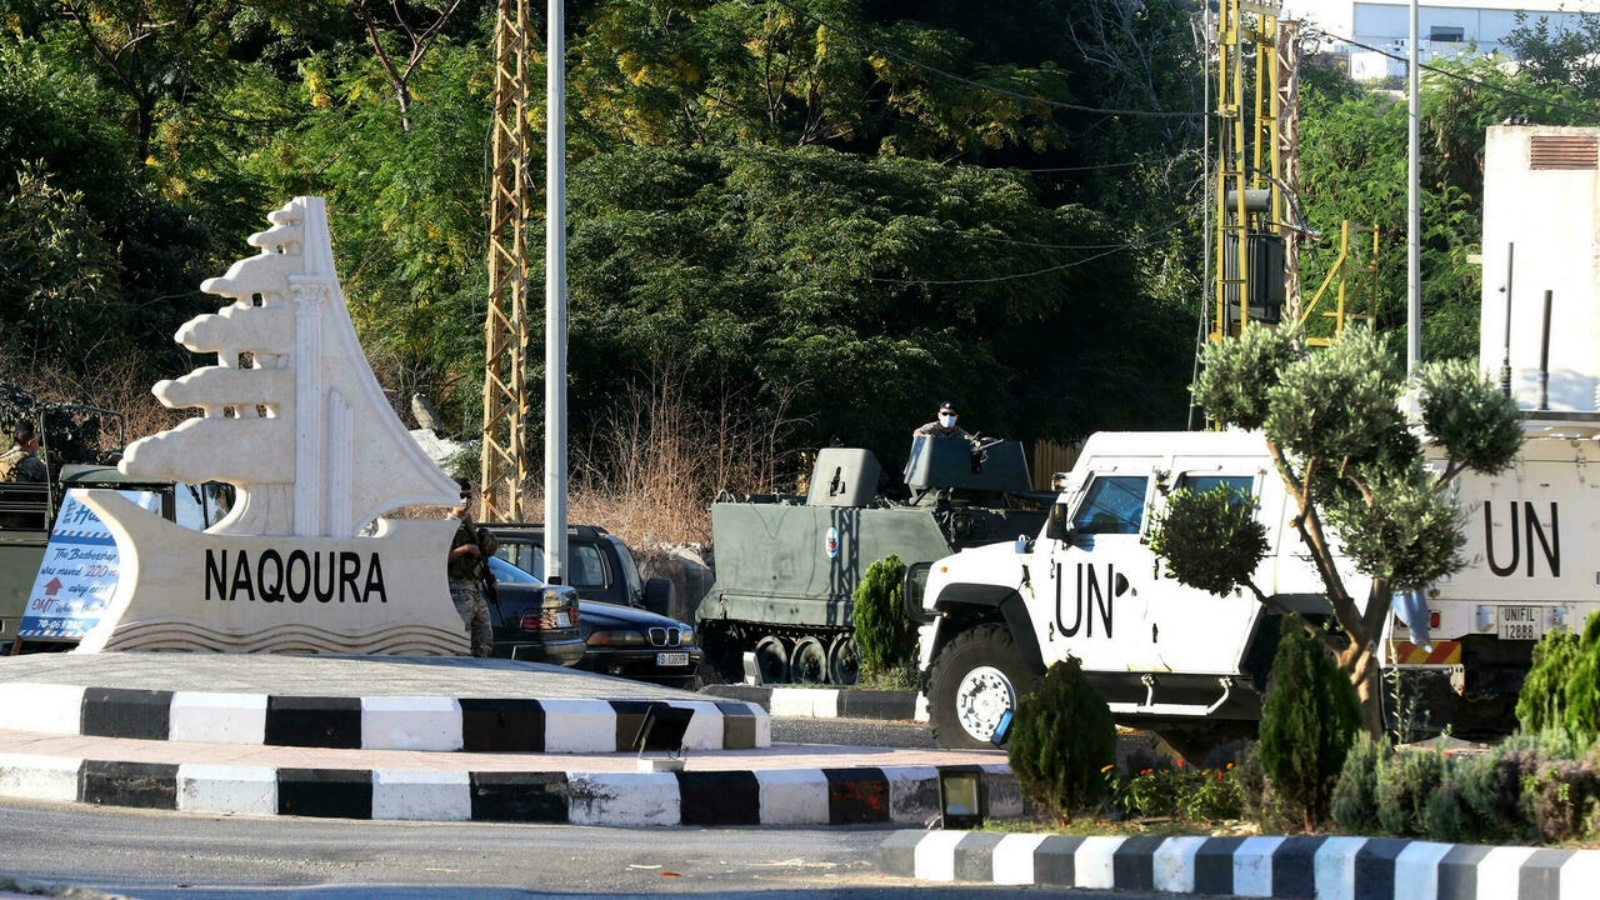 آليات لقوة الأمم المتحدة المؤقتة في جنوب لبنان وللجيش اللبناني في 14 تشرين الأول/أكتوبر في بلدة الناقورة الحدودية حيث تمت أولى جولات التفاوض مع اسرائيل حول ترسيم الحدود البحرية 